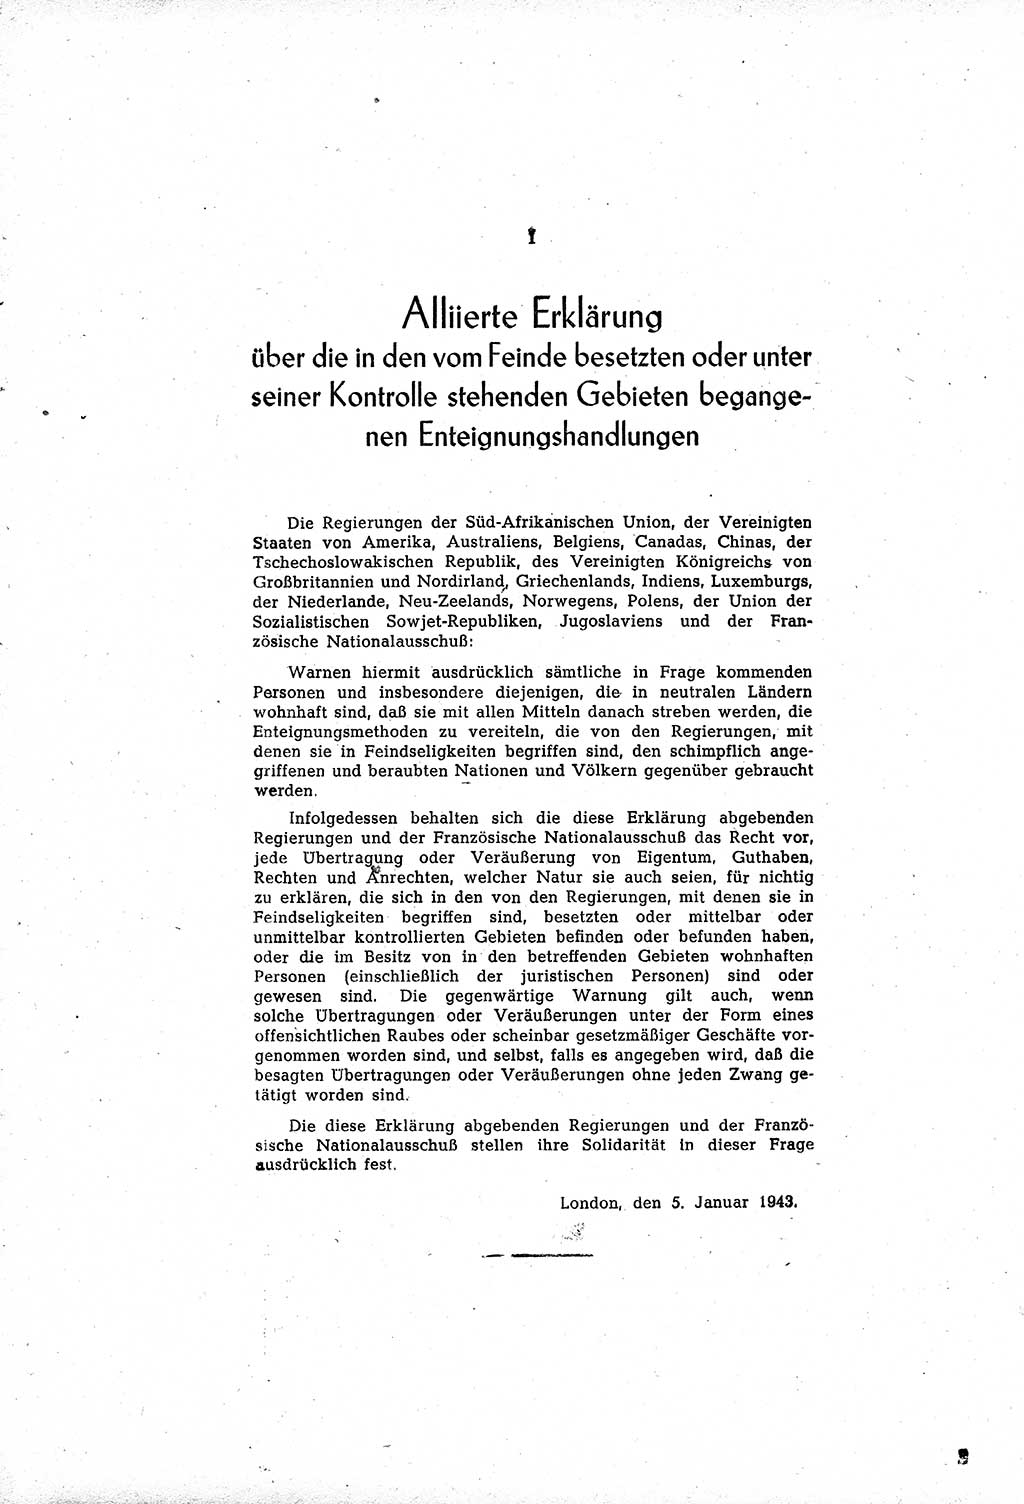 Amtsblatt des Kontrollrats (ABlKR) in Deutschland, Ergänzungsblatt Nr. 1, Sammlung von Urkunden betreffend die Errichtung der Alliierten Kontrollbehörde 1945, Seite 3 (ABlKR Dtl., Erg. Bl. 1 1945, S. 3)